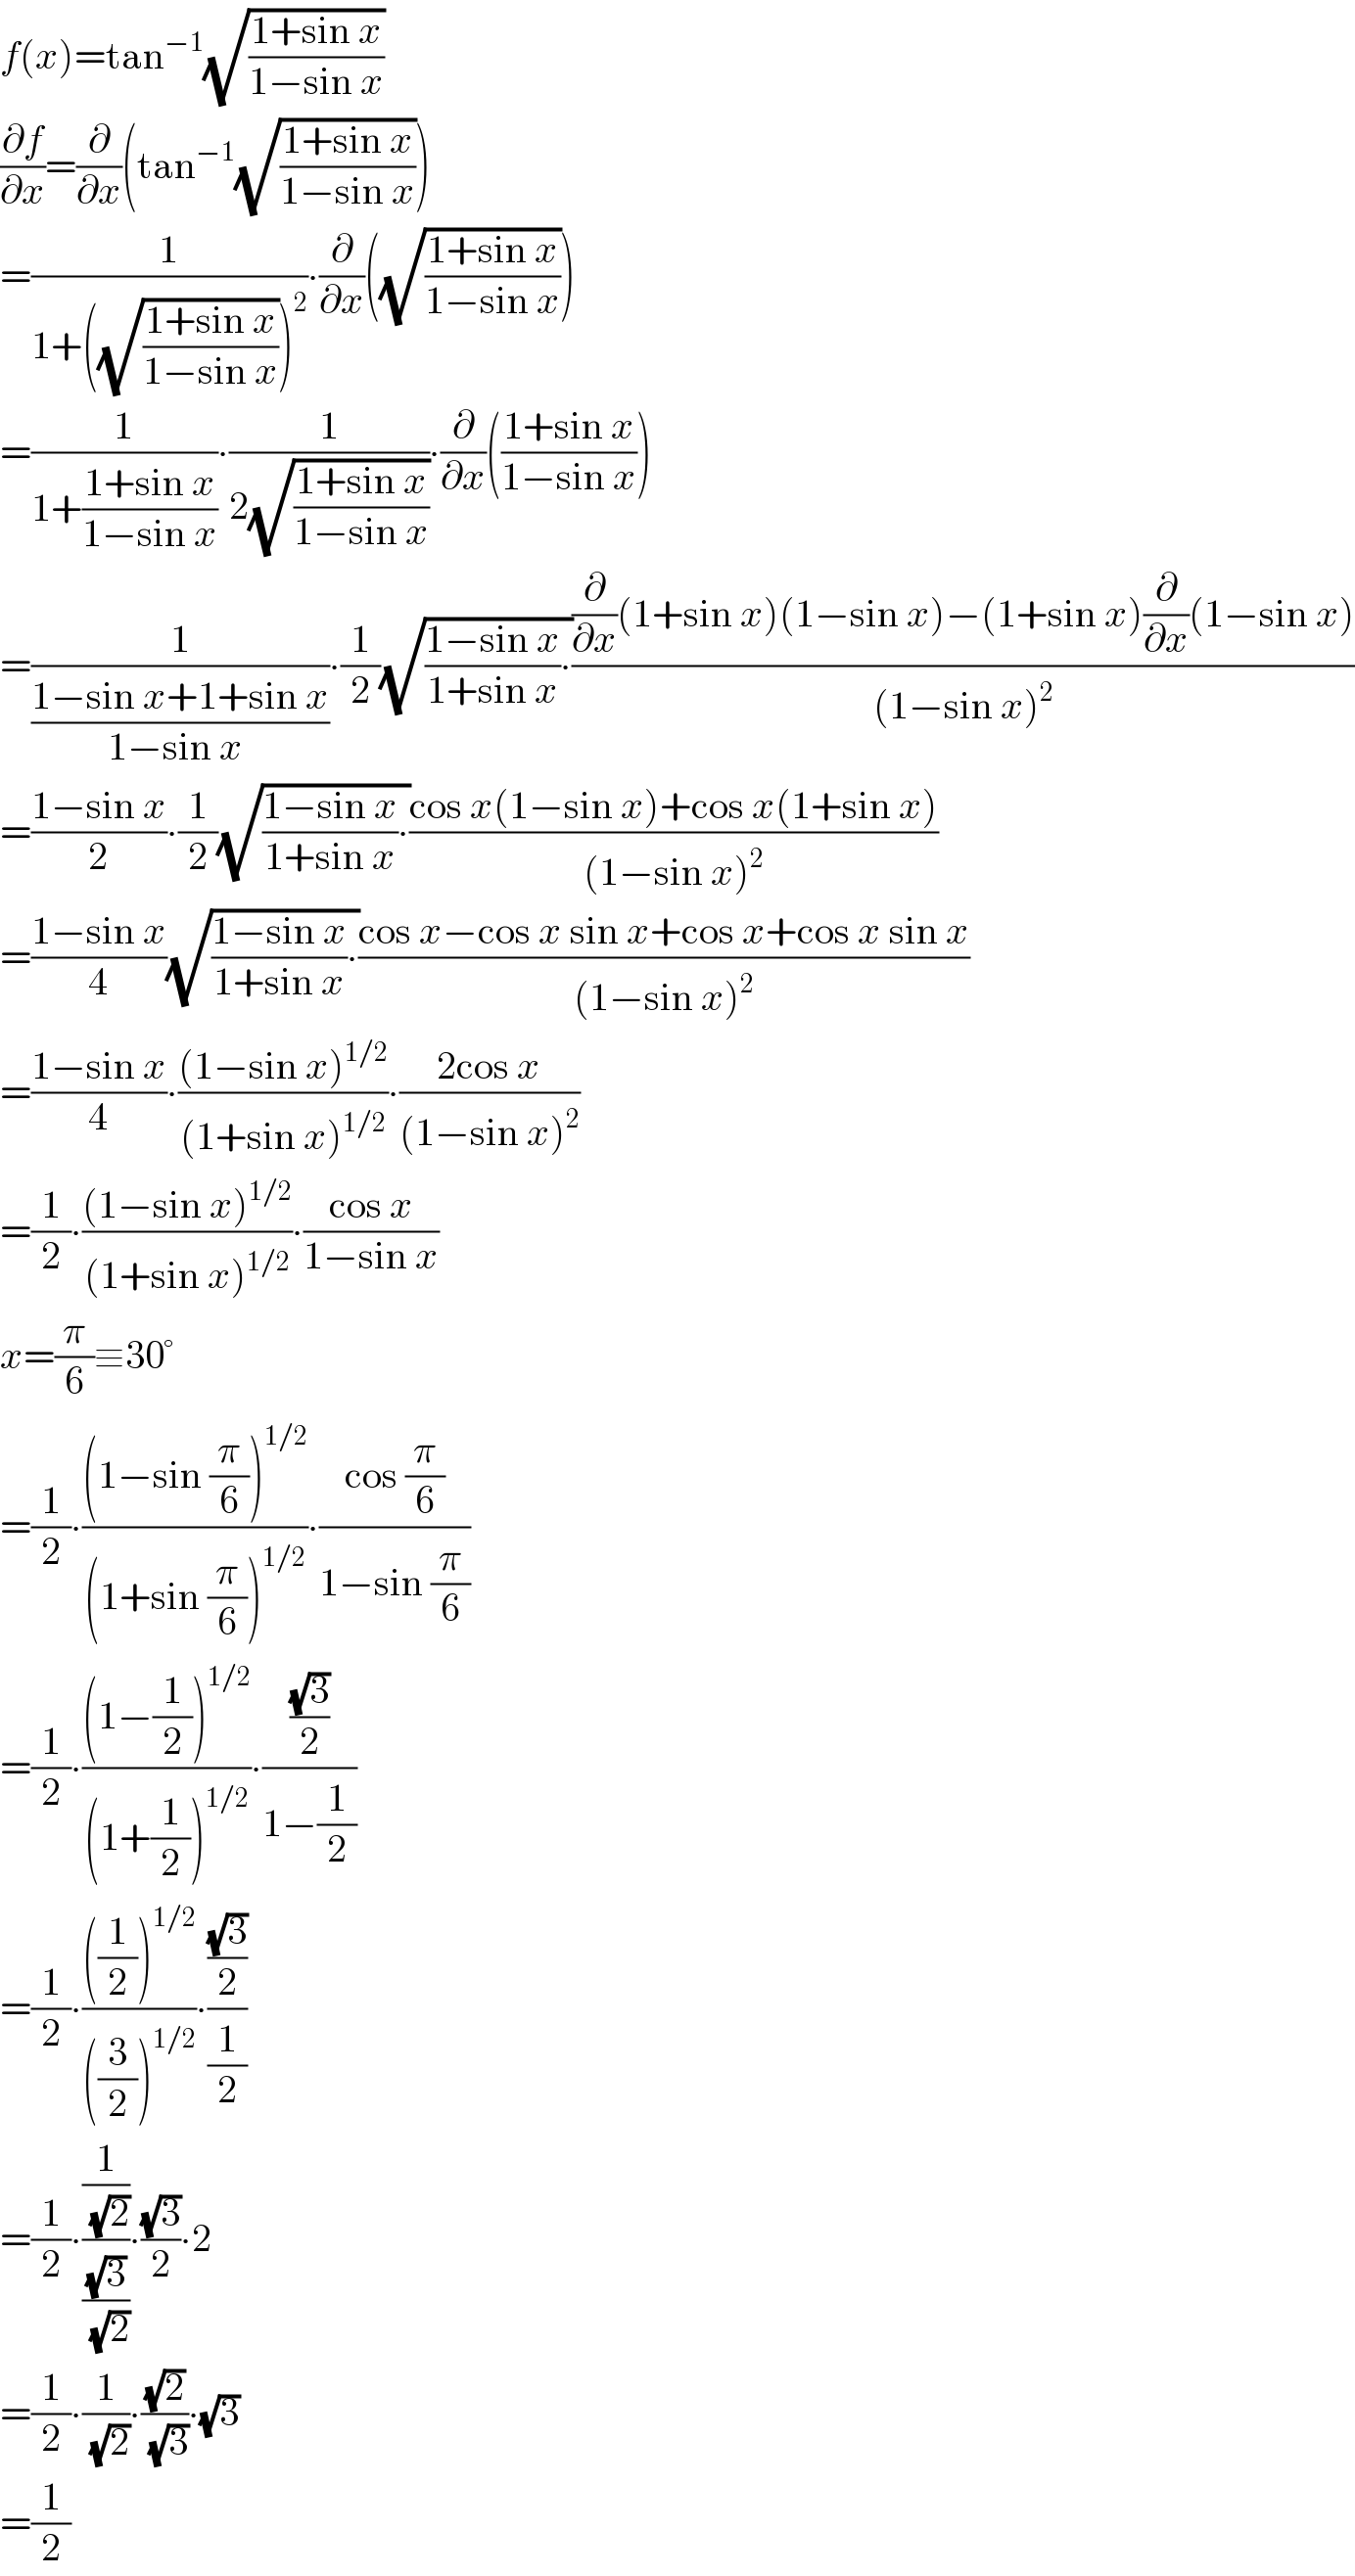 f(x)=tan^(−1) (√((1+sin x)/(1−sin x)))  (∂f/∂x)=(∂/∂x)(tan^(−1) (√((1+sin x)/(1−sin x))))  =(1/(1+((√((1+sin x)/(1−sin x))))^2 ))∙(∂/∂x)((√((1+sin x)/(1−sin x))))  =(1/(1+((1+sin x)/(1−sin x))))∙(1/(2(√((1+sin x)/(1−sin x)))))∙(∂/∂x)(((1+sin x)/(1−sin x)))  =(1/((1−sin x+1+sin x)/(1−sin x )))∙(1/2)(√(((1−sin x)/(1+sin x))∙))(((∂/∂x)(1+sin x)(1−sin x)−(1+sin x)(∂/∂x)(1−sin x))/((1−sin x)^2 ))  =((1−sin x)/2)∙(1/2)(√(((1−sin x)/(1+sin x))∙))((cos x(1−sin x)+cos x(1+sin x))/((1−sin x)^2 ))  =((1−sin x)/4)(√(((1−sin x)/(1+sin x))∙))((cos x−cos x sin x+cos x+cos x sin x)/((1−sin x)^2 ))  =((1−sin x)/4)∙(((1−sin x)^(1/2) )/((1+sin x)^(1/2) ))∙((2cos x)/((1−sin x)^2 ))  =(1/2)∙(((1−sin x)^(1/2) )/((1+sin x)^(1/2) ))∙((cos x)/(1−sin x))  x=(π/6)≡30°  =(1/2)∙(((1−sin (π/6))^(1/2) )/((1+sin (π/6))^(1/2) ))∙((cos (π/6))/(1−sin (π/6)))  =(1/2)∙(((1−(1/2))^(1/2) )/((1+(1/2))^(1/2) ))∙(((√3)/2)/(1−(1/2)))  =(1/2)∙((((1/2))^(1/2) )/(((3/2))^(1/2) ))∙(((√3)/2)/(1/2))  =(1/2)∙((1/(√2))/((√3)/(√2)))∙((√3)/2)∙2  =(1/2)∙(1/(√2))∙((√2)/(√3))∙(√3)  =(1/2)  